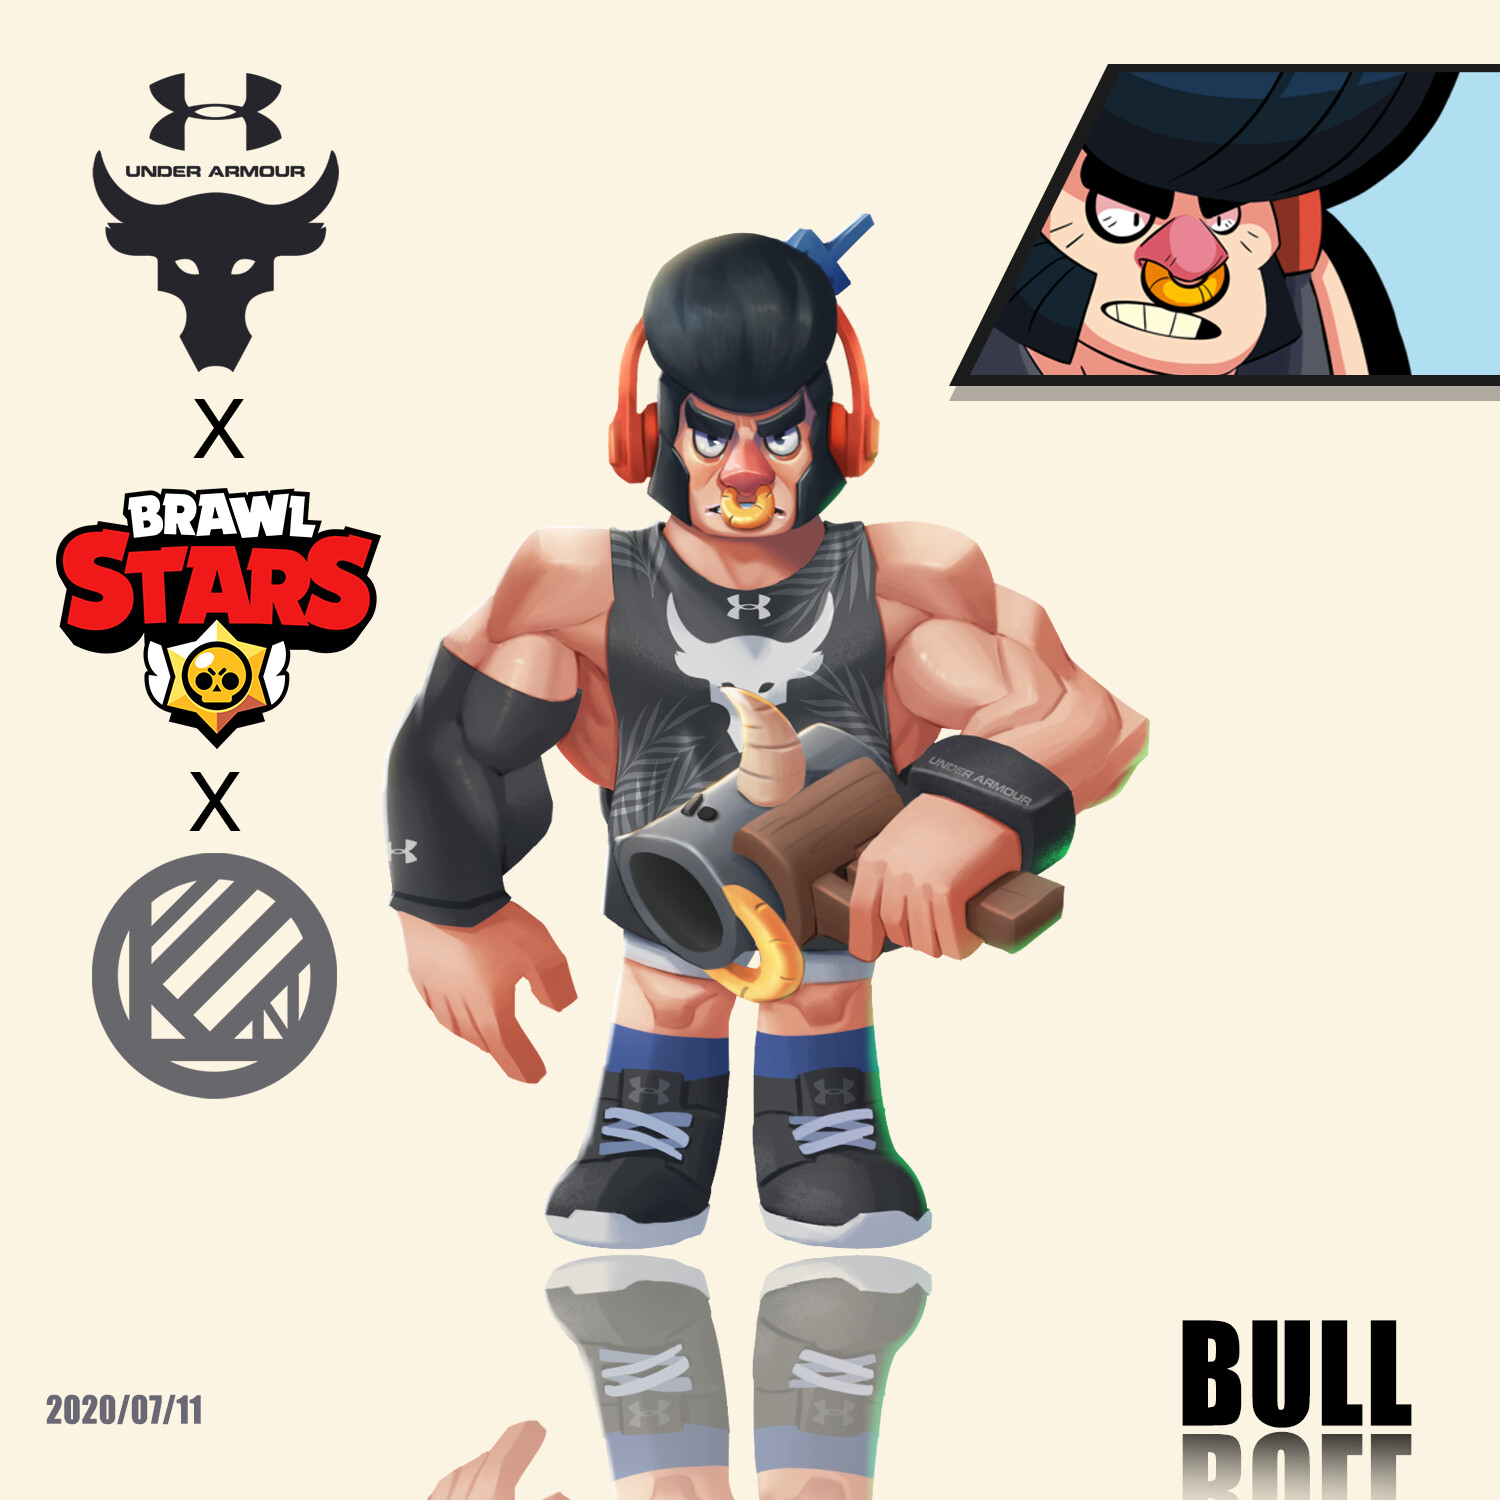 Leon Chen - bull brawl stars pin